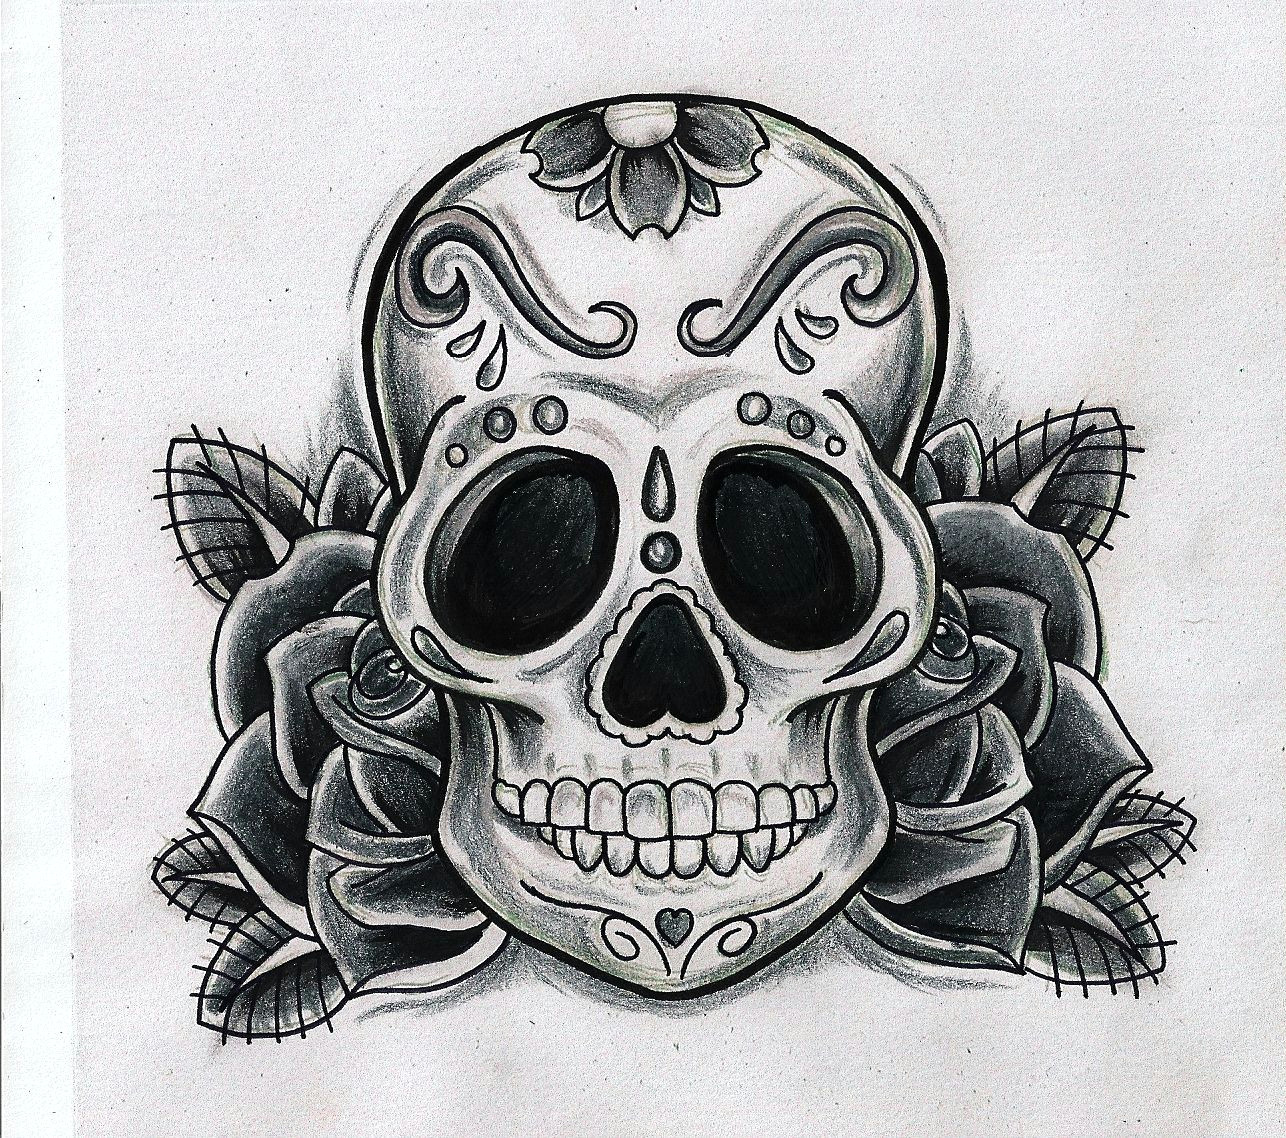 Skull Drawing Funny Gallery Funny Game Sugar Skull Designs Tattoos Sugar Skull